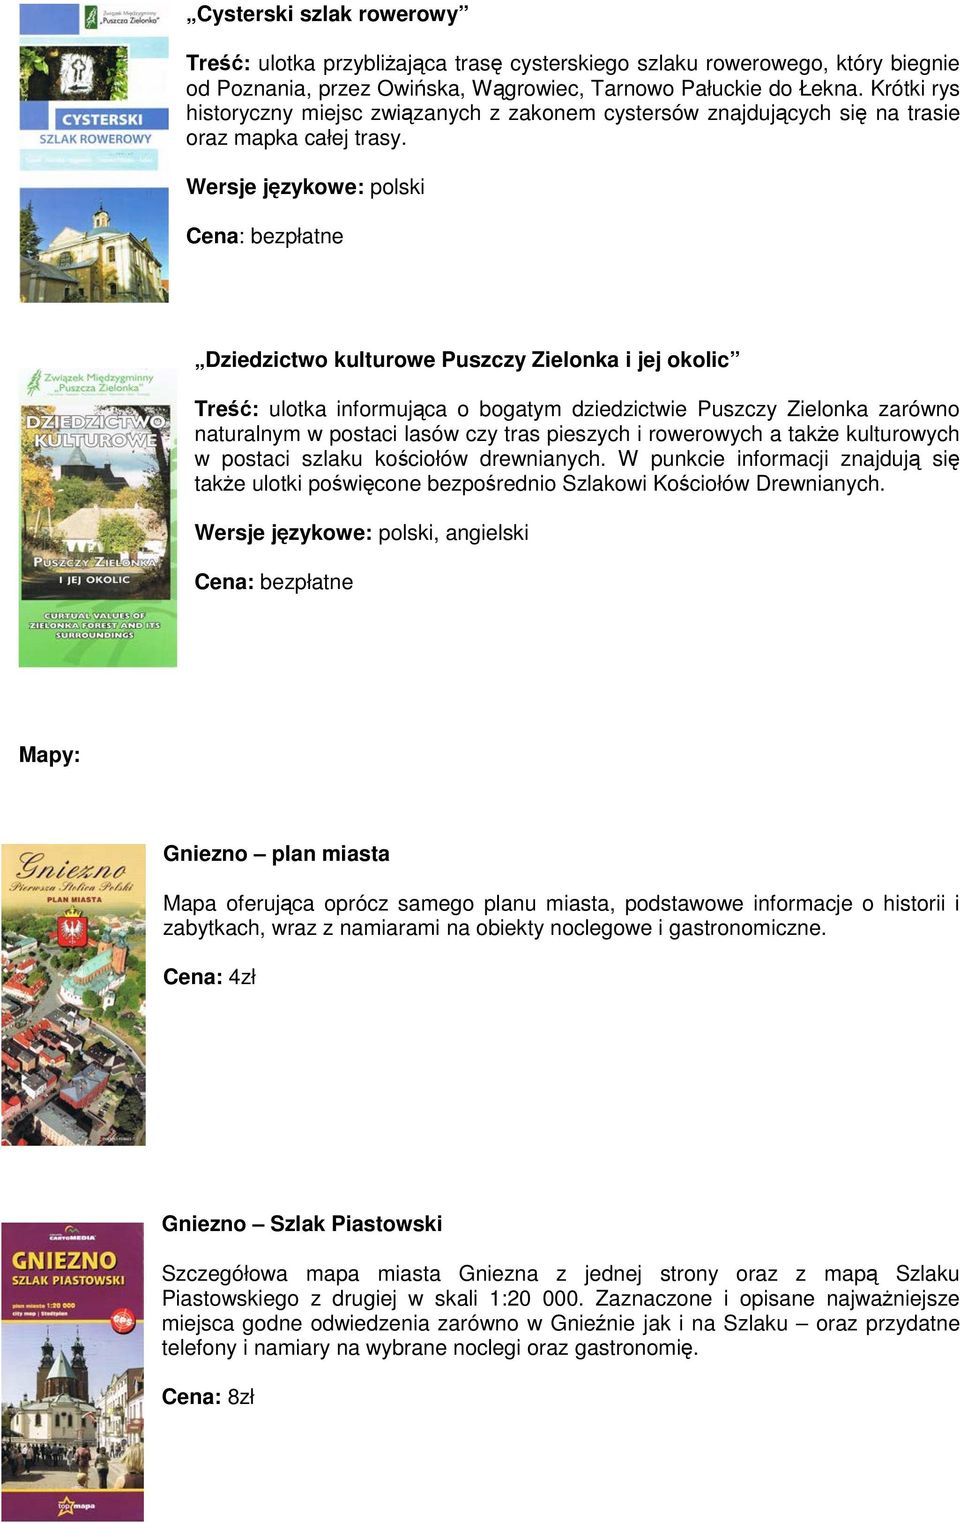 Dziedzictwo kulturowe Puszczy Zielonka i jej okolic Treść: ulotka informująca o bogatym dziedzictwie Puszczy Zielonka zarówno naturalnym w postaci lasów czy tras pieszych i rowerowych a także